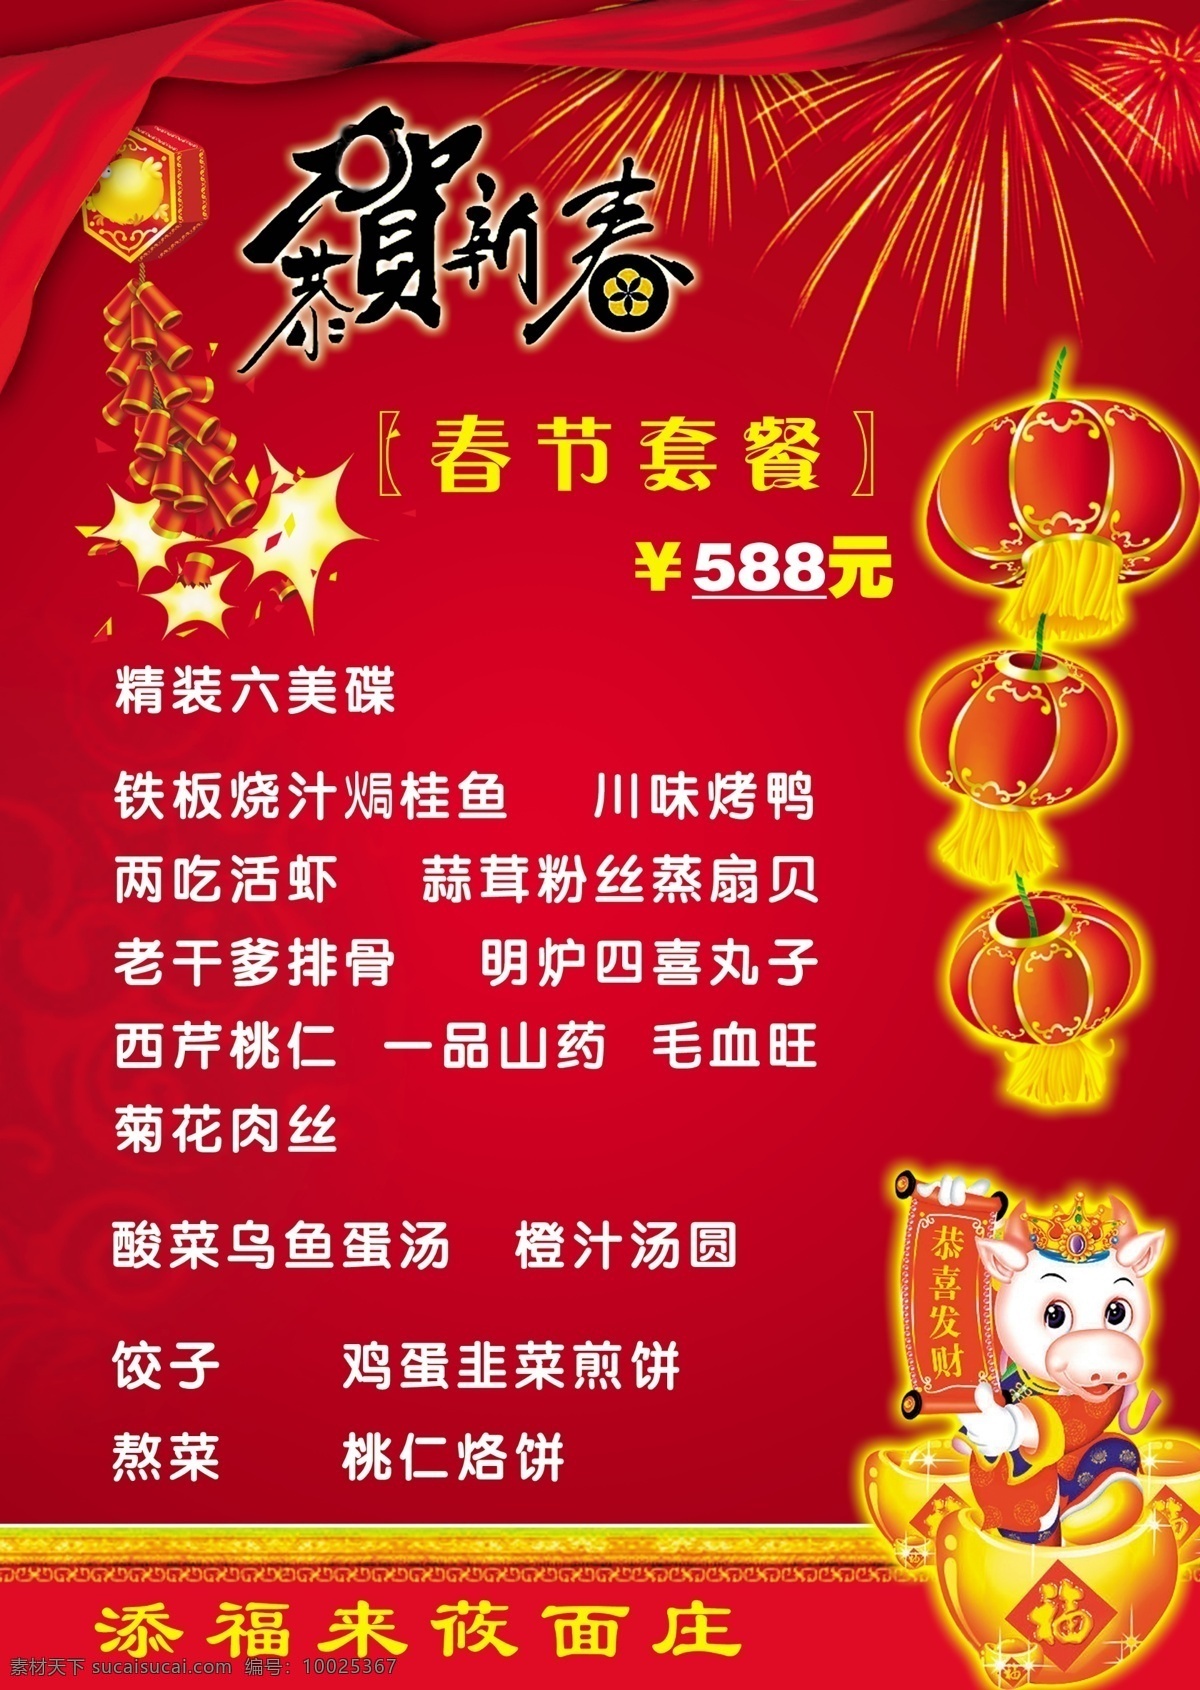 春节 年夜饭 菜单 菜单菜谱 菜单设计 节日素材 2015 新年 元旦 元宵